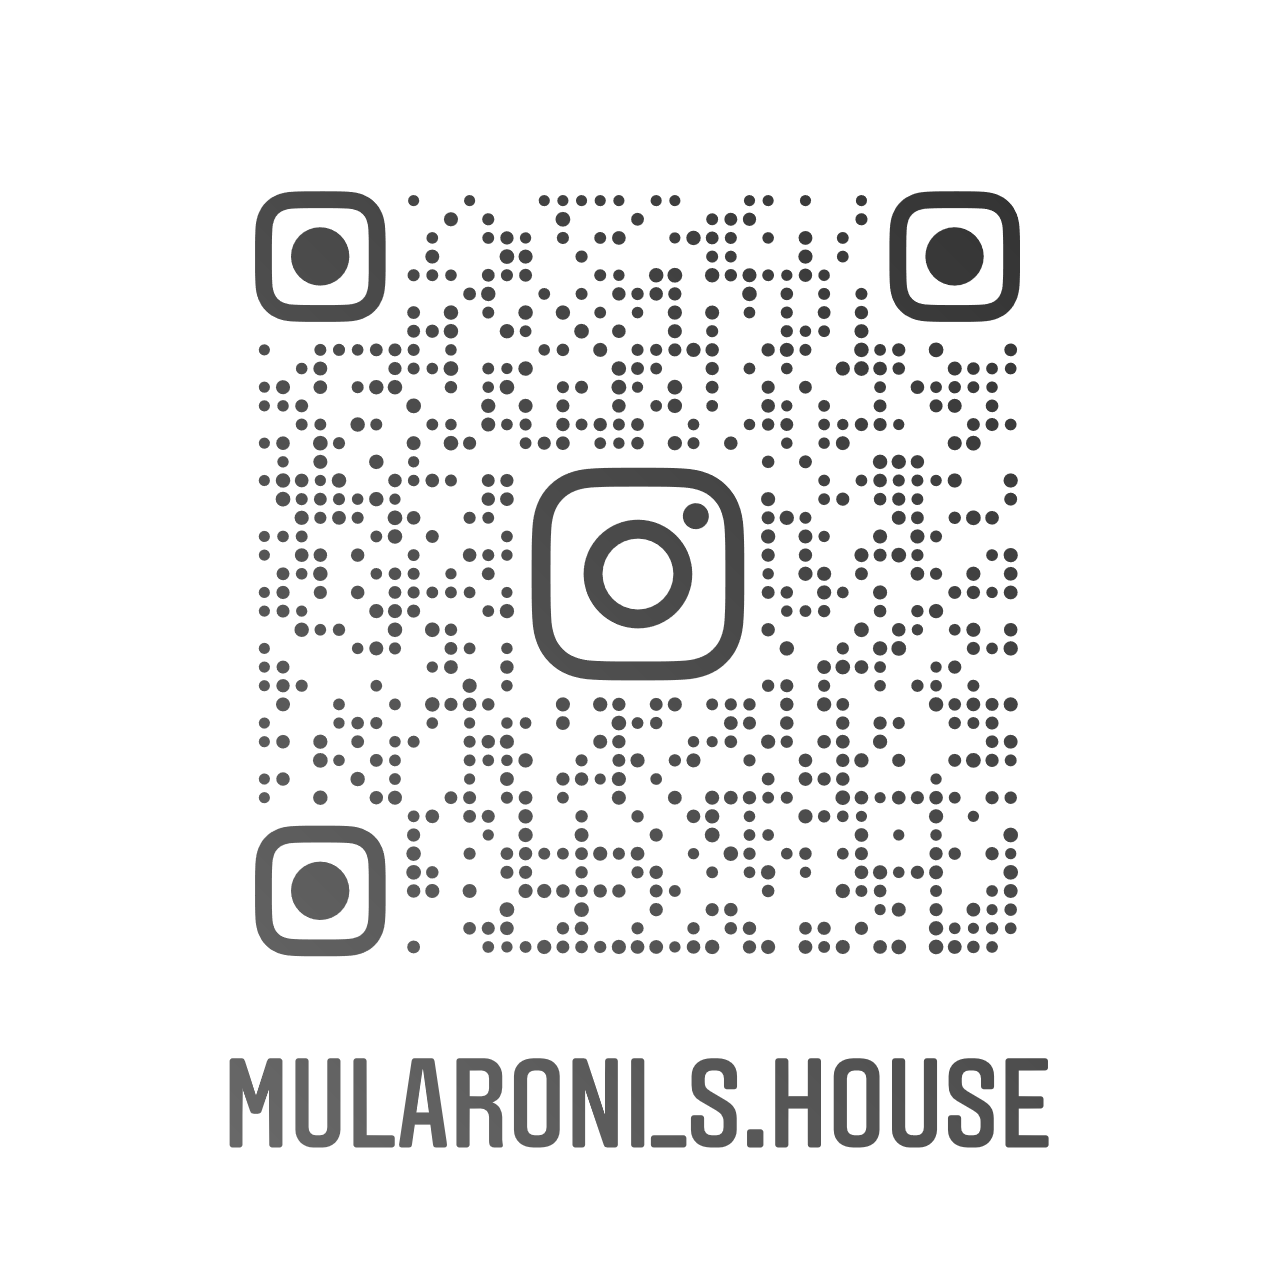 MULARONI'S HOUSE